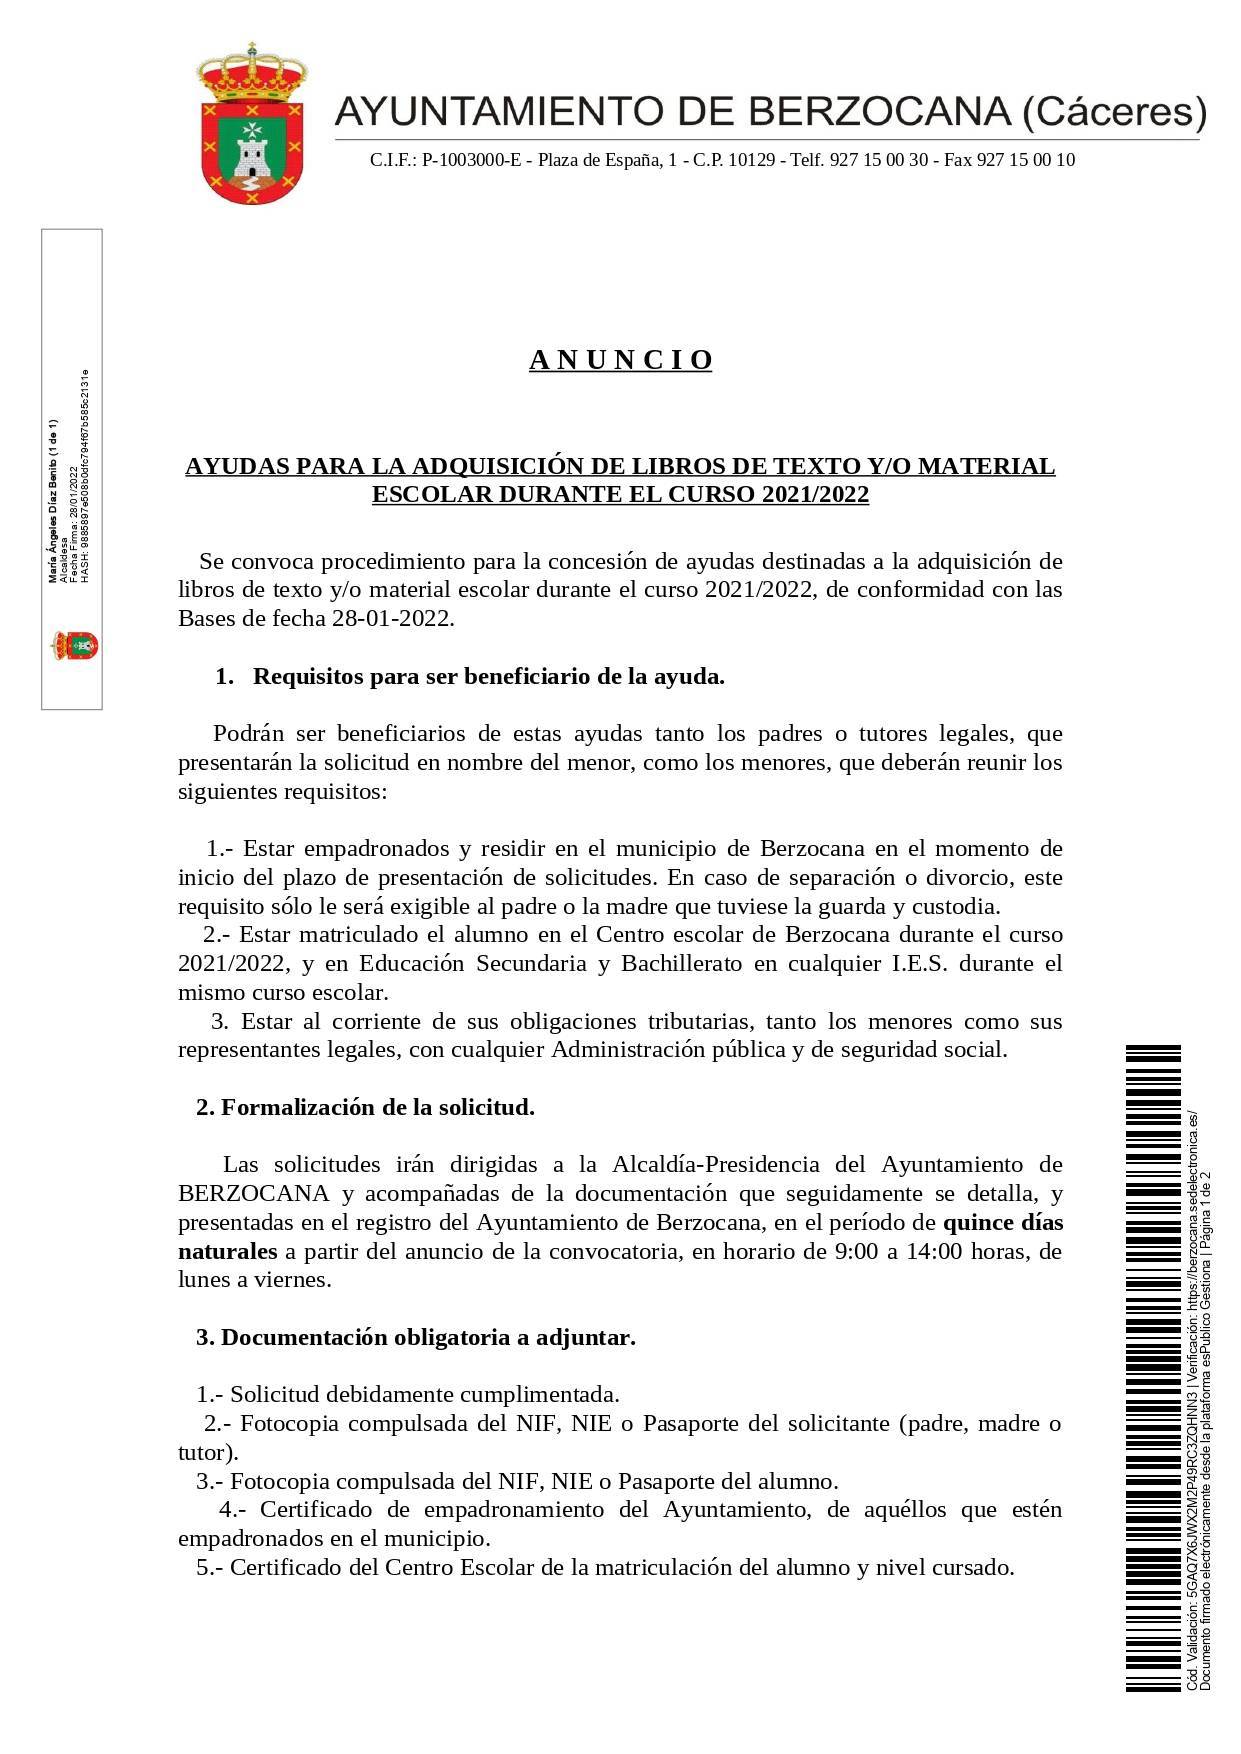 Ayudas para la adquisición de libros de texto y material escolar (2022) - Berzocana (Cáceres) 1